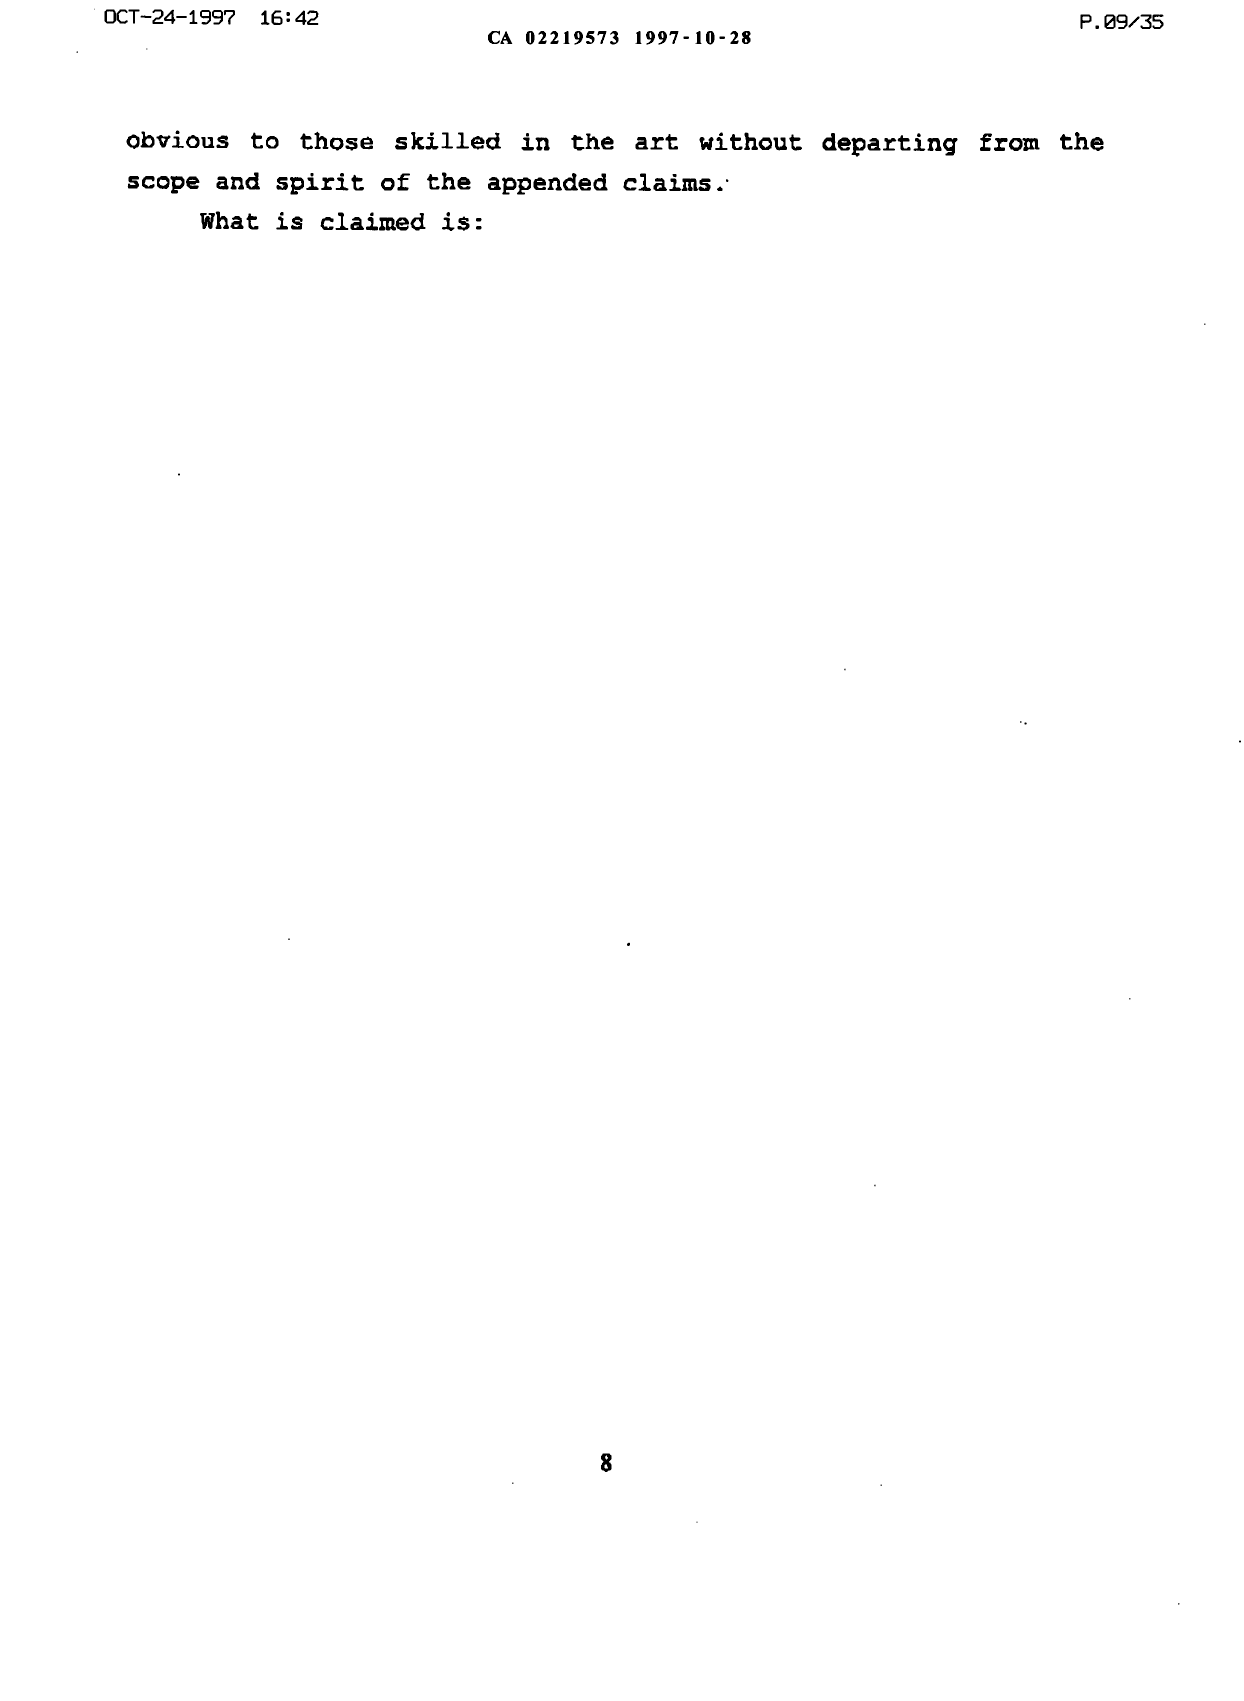 Canadian Patent Document 2219573. Description 20000126. Image 9 of 9